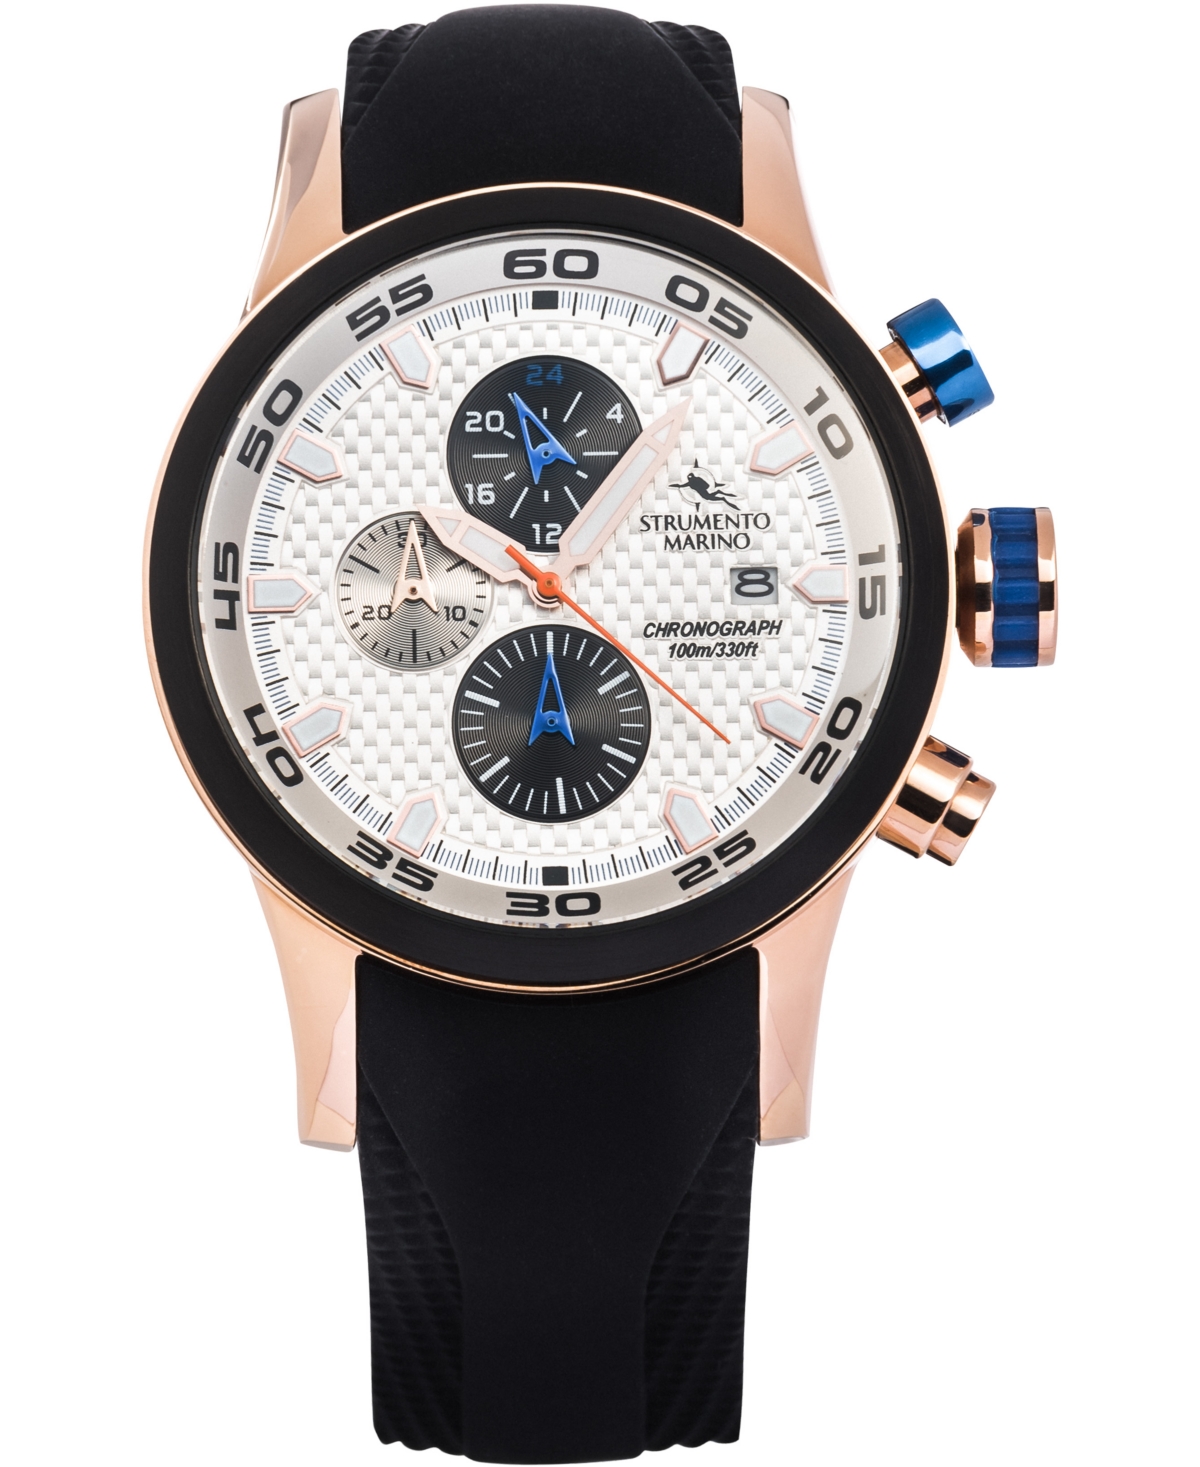 Men's Speedboat Black Silicone Performance Timepiece Watch 46mm - Black